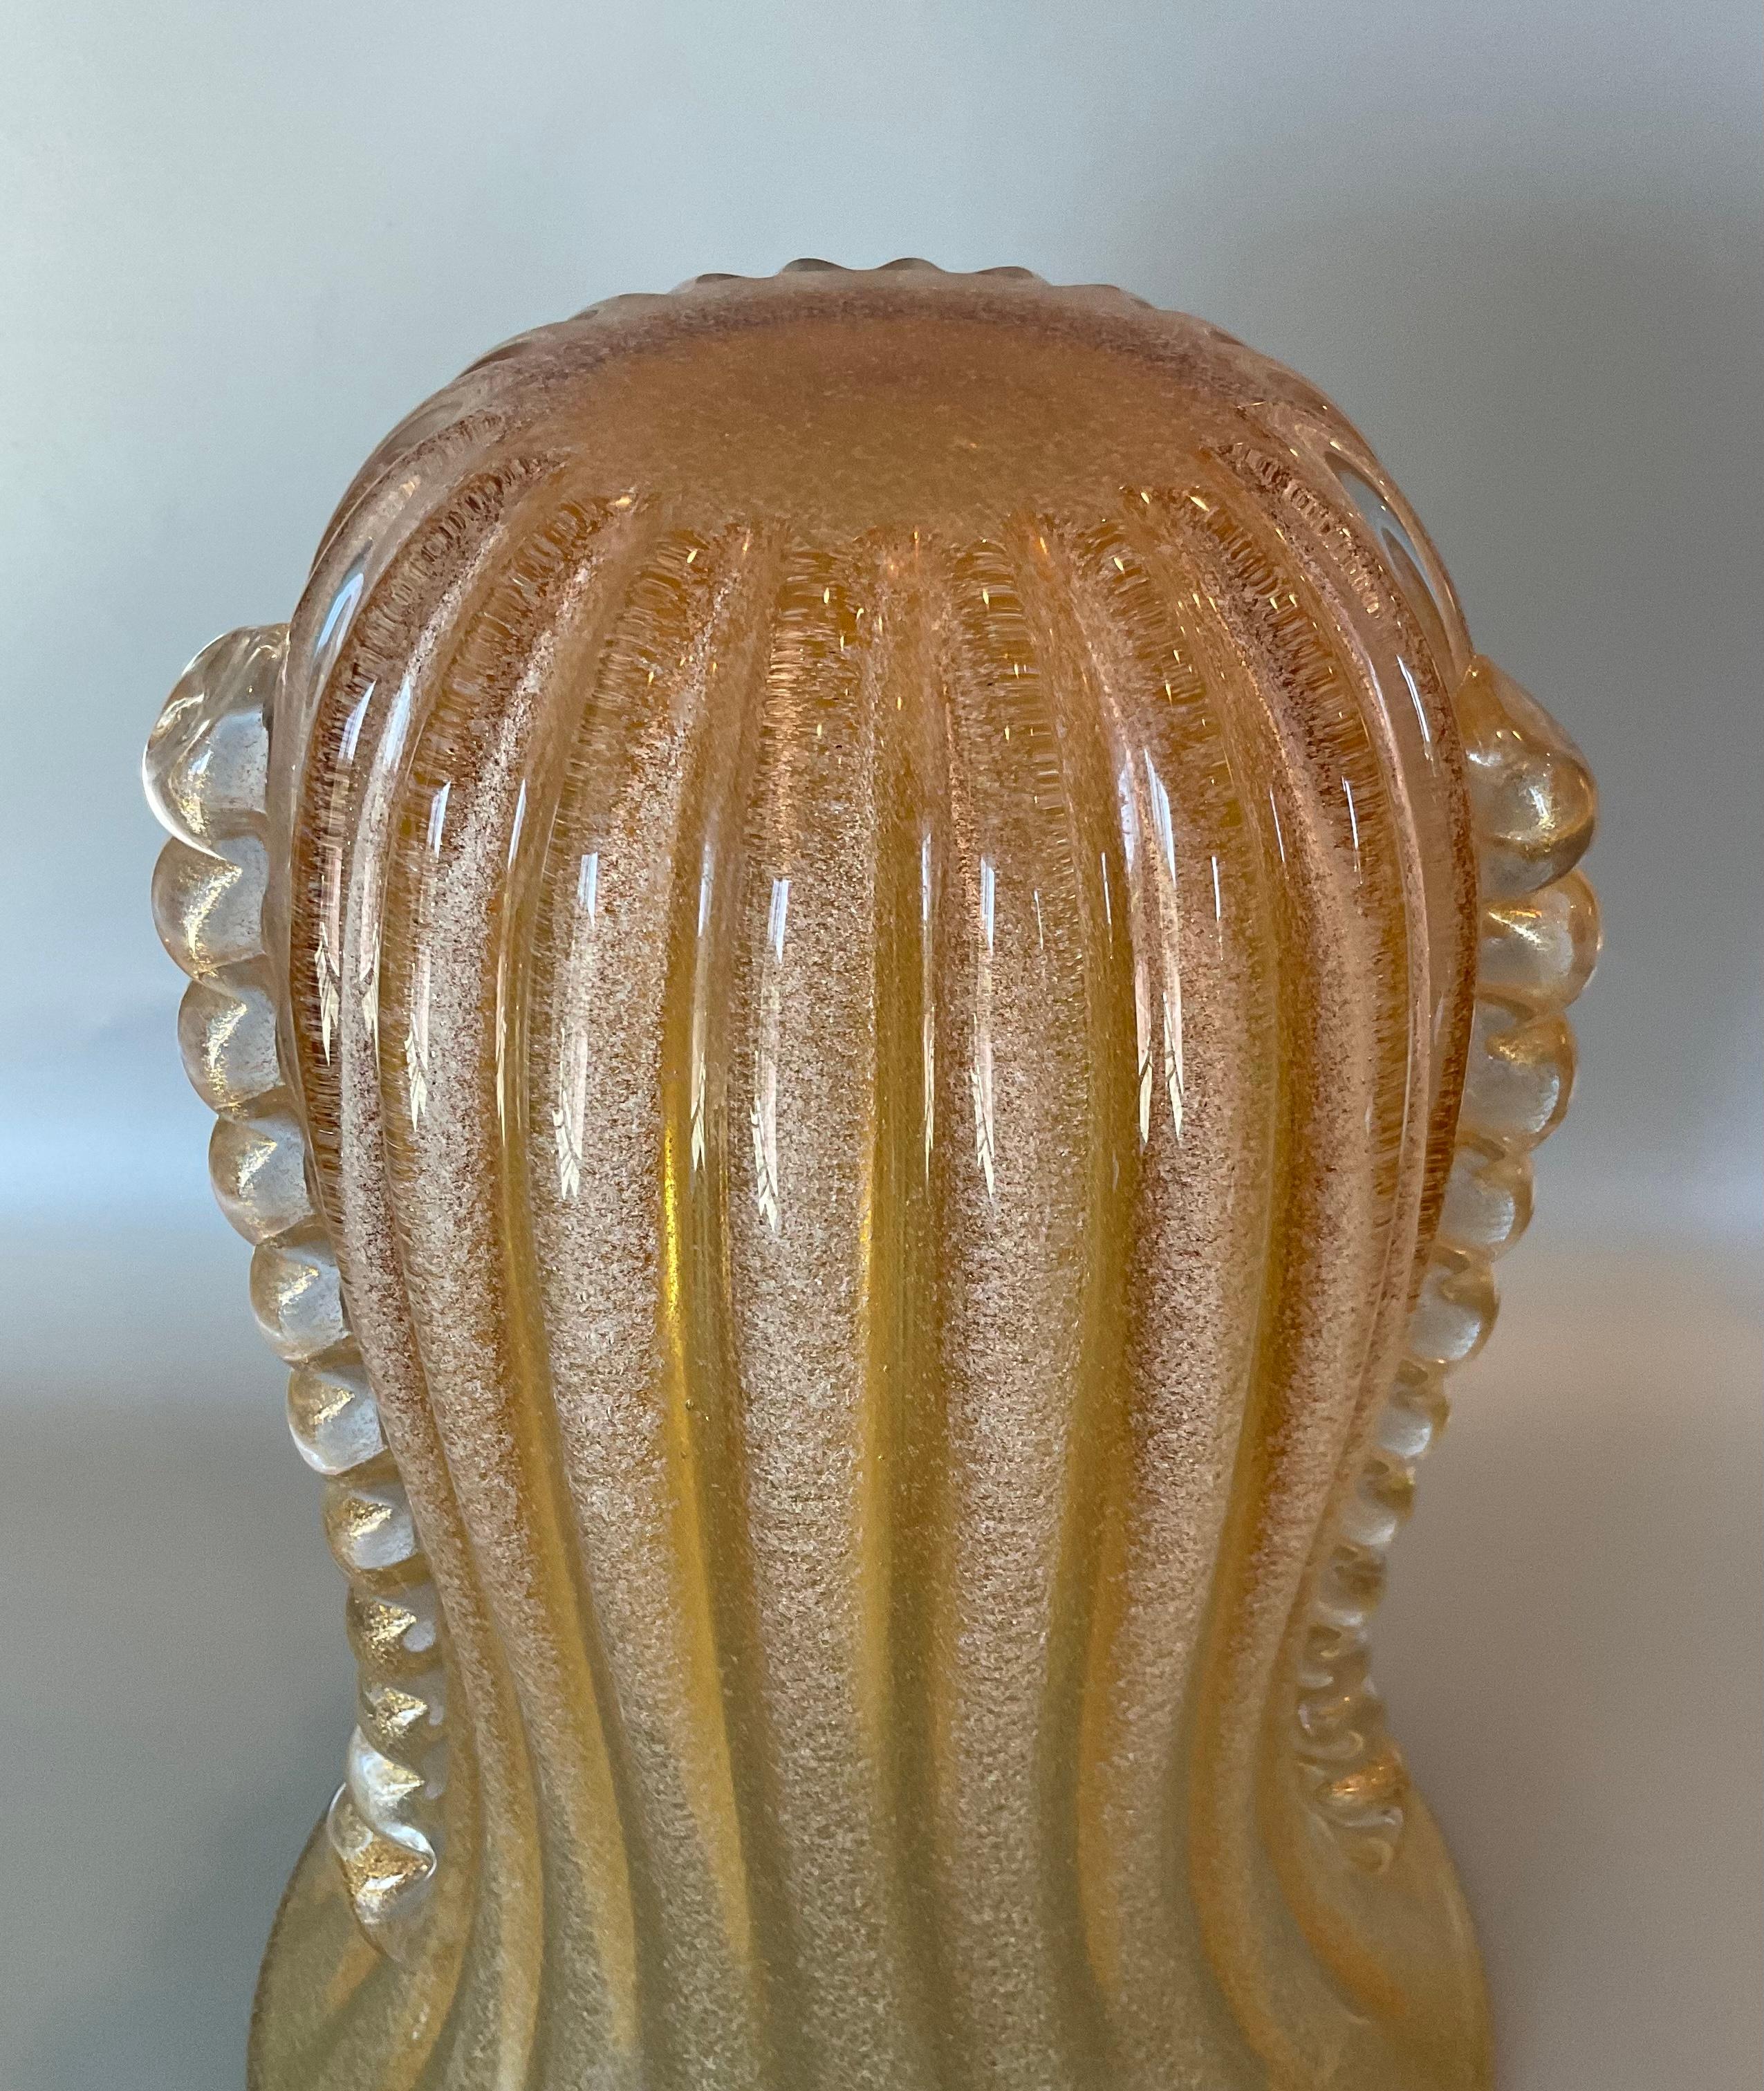 Grand vase en verre d'art de Murano en verre Pulegoso doré avec des poignées appliquées en or. Le vase présente un motif nervuré. Style et exécution sophistiqués. 